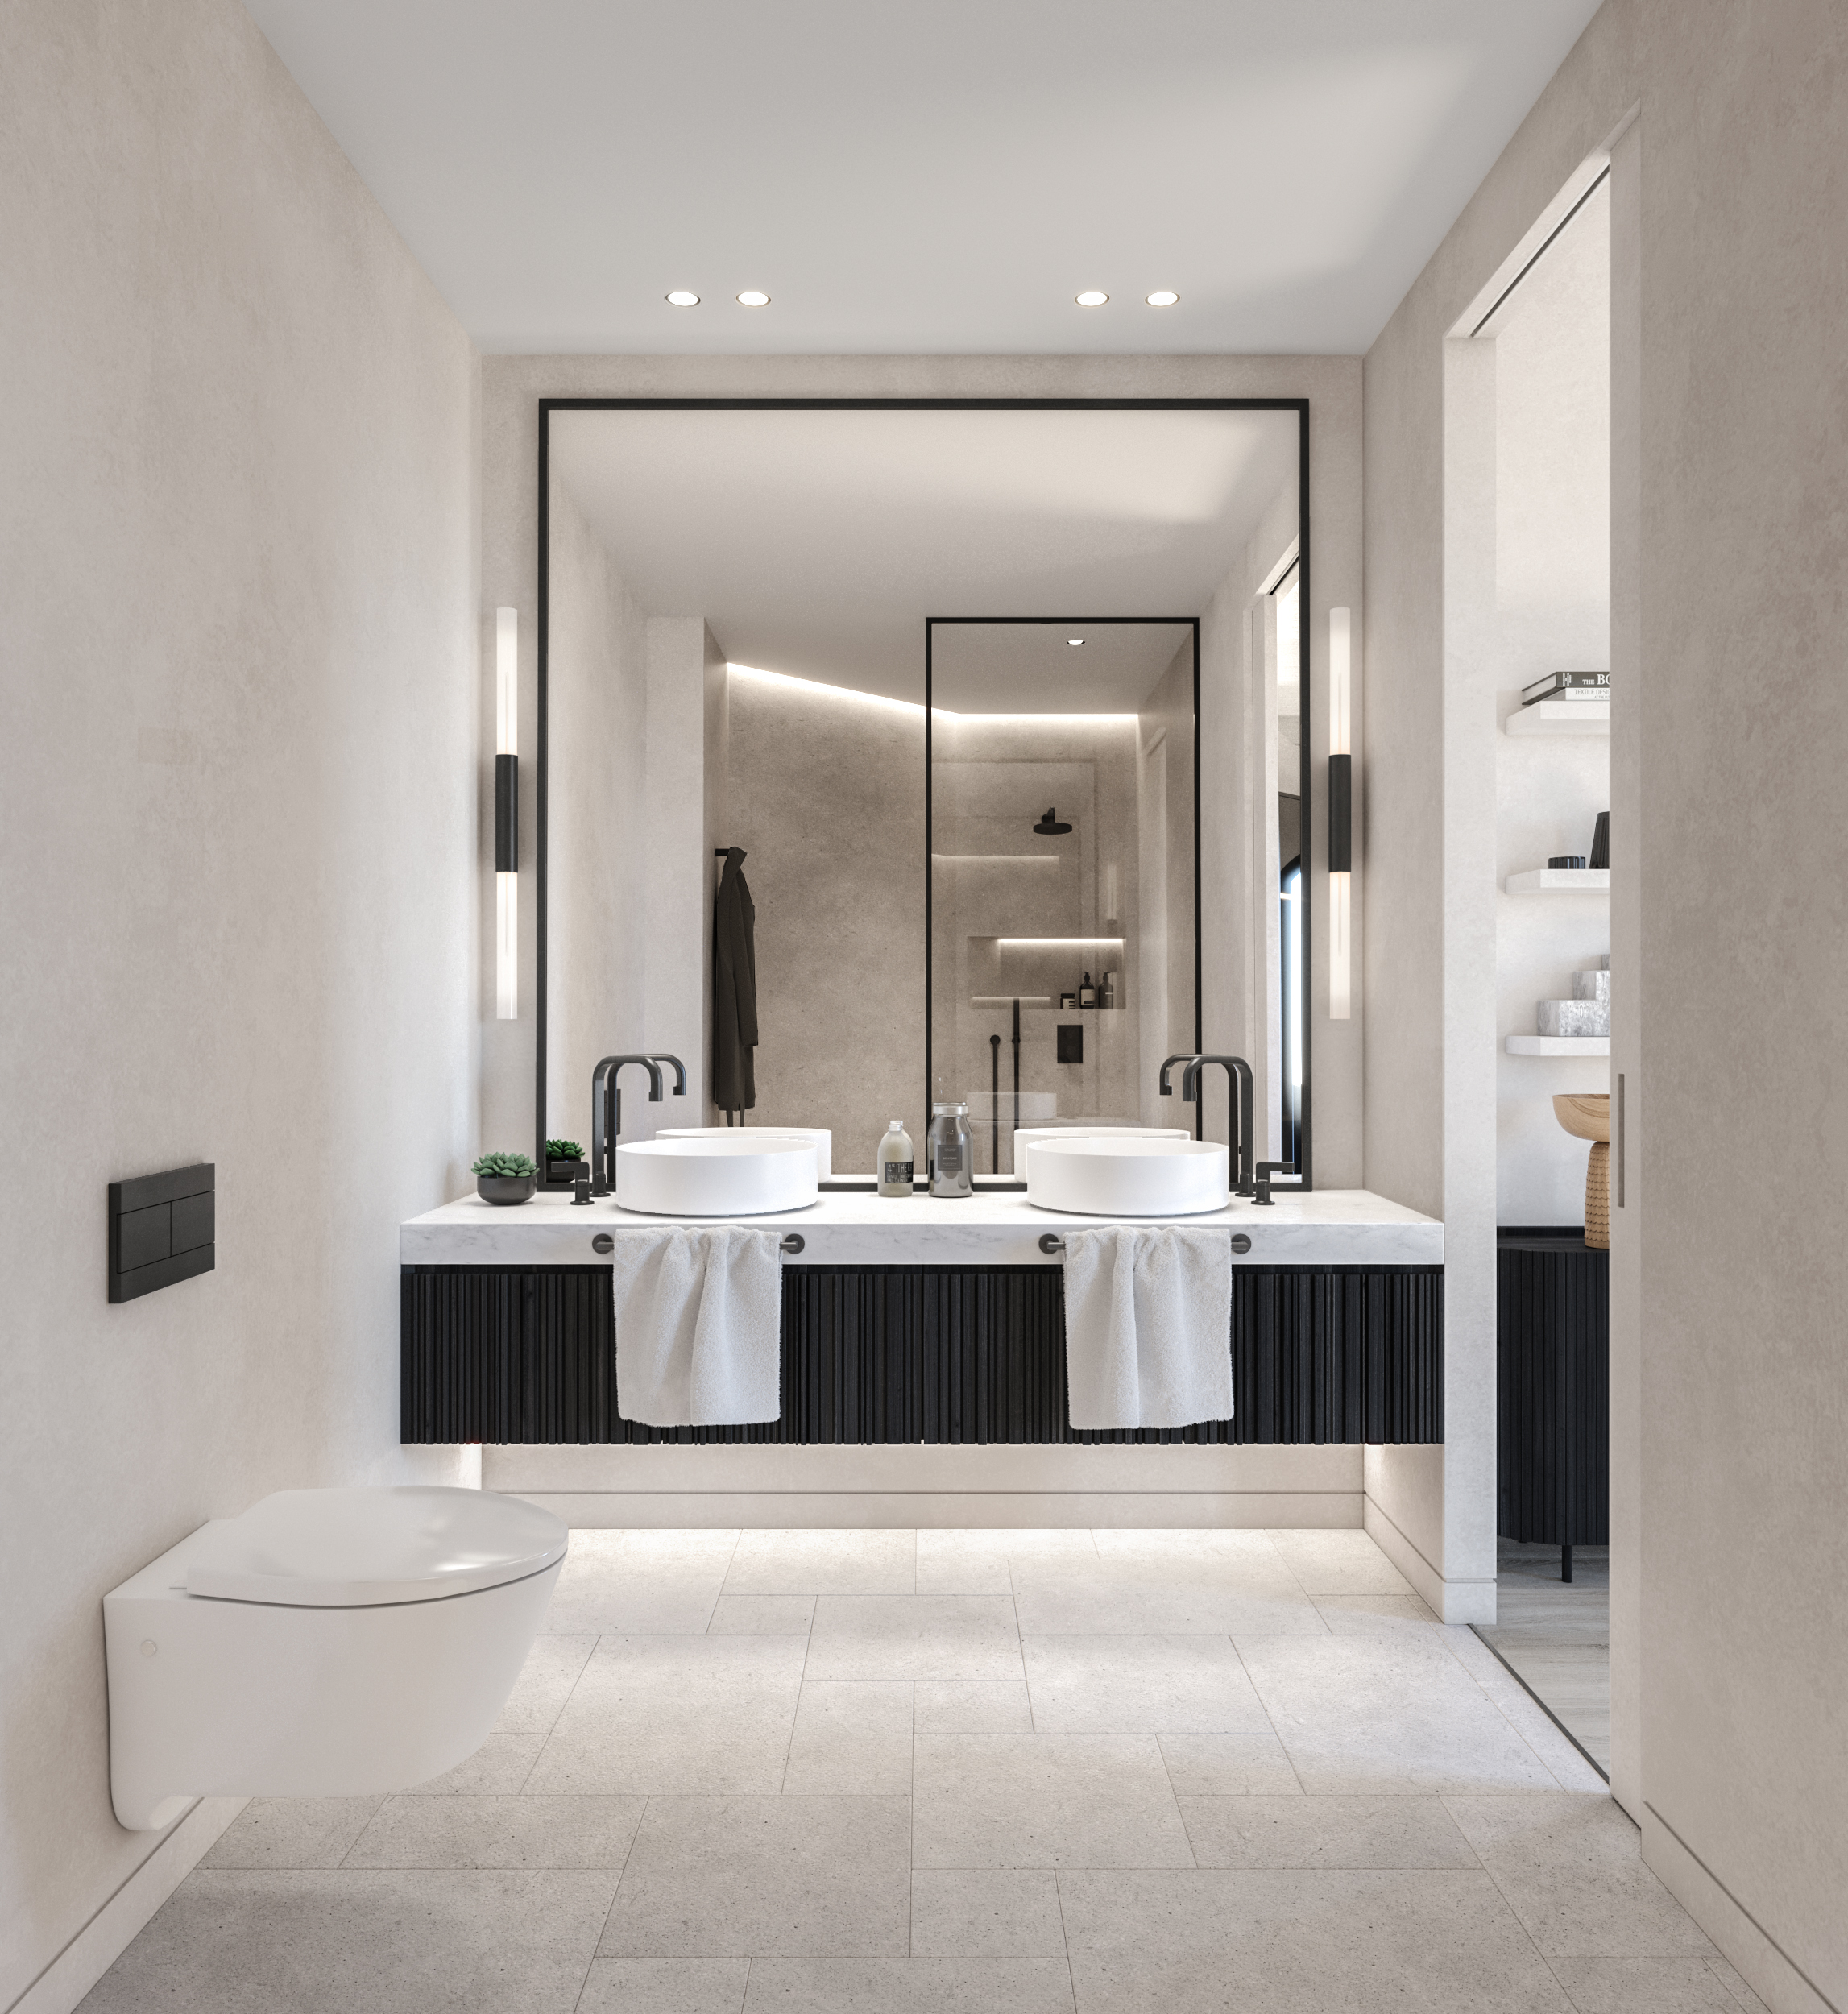 05.20 10 Rambla Cat 110.Bathroom - LUV Studio - Architecture & Design - Barcelona